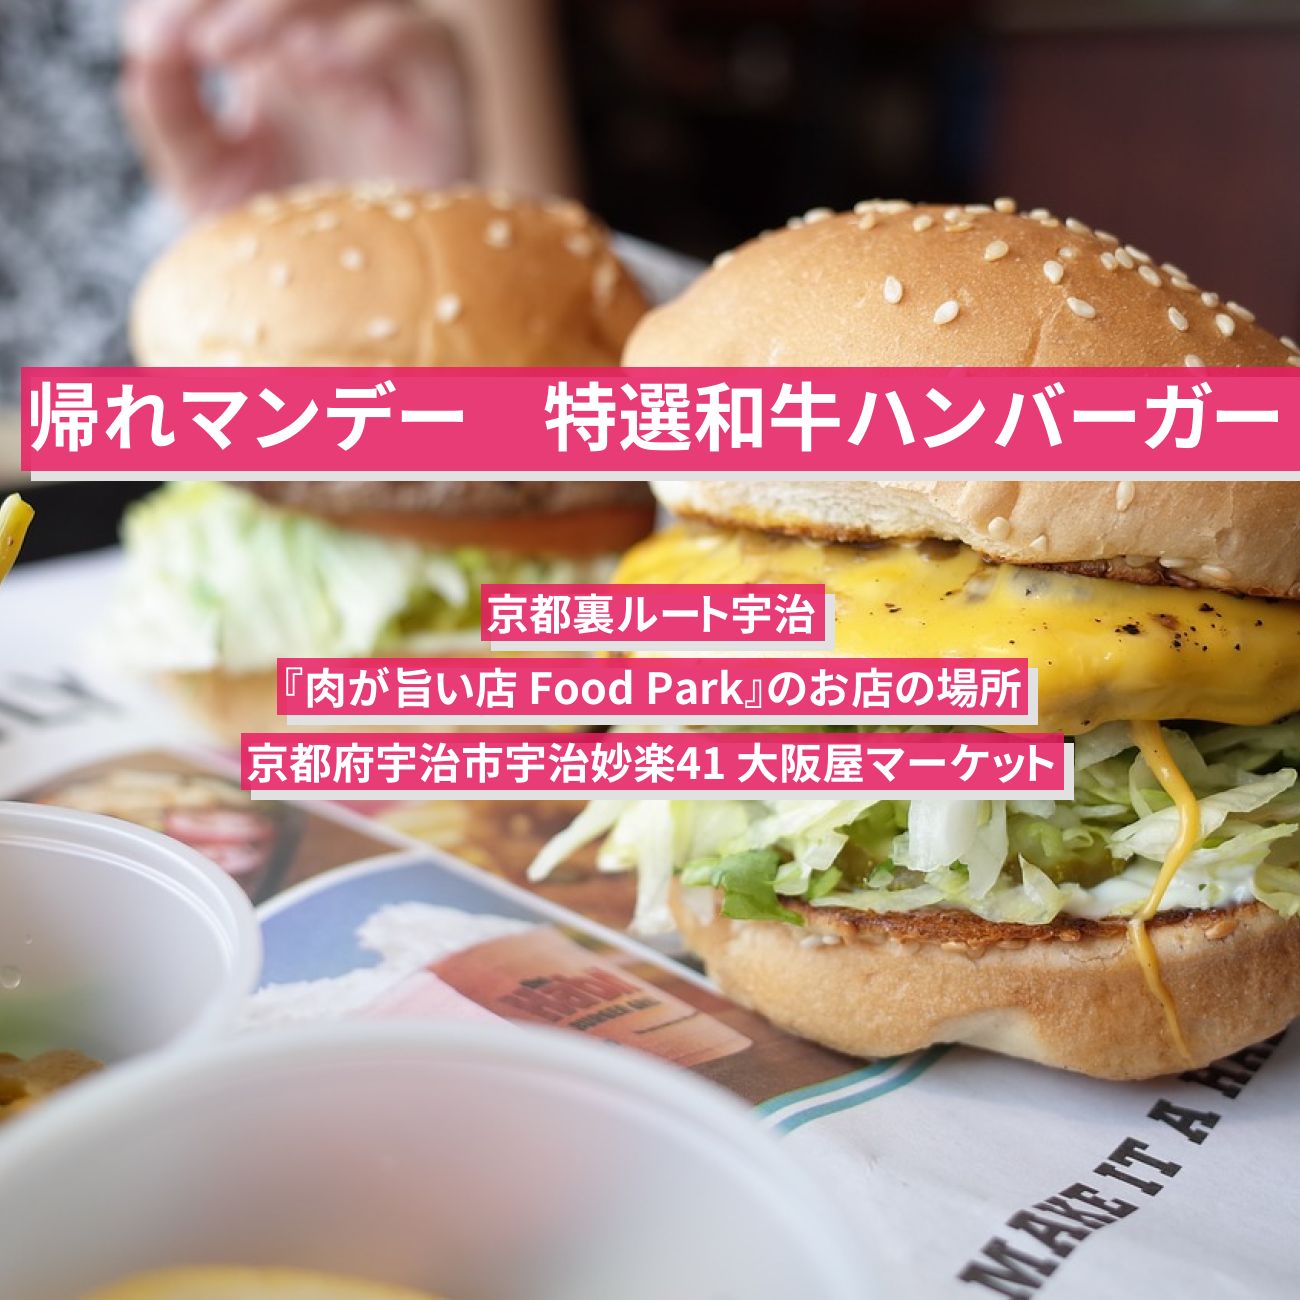 【帰れマンデー】特選和牛ハンバーガー『肉が旨い店 Food Park』京都裏ルート宇治のお店の場所